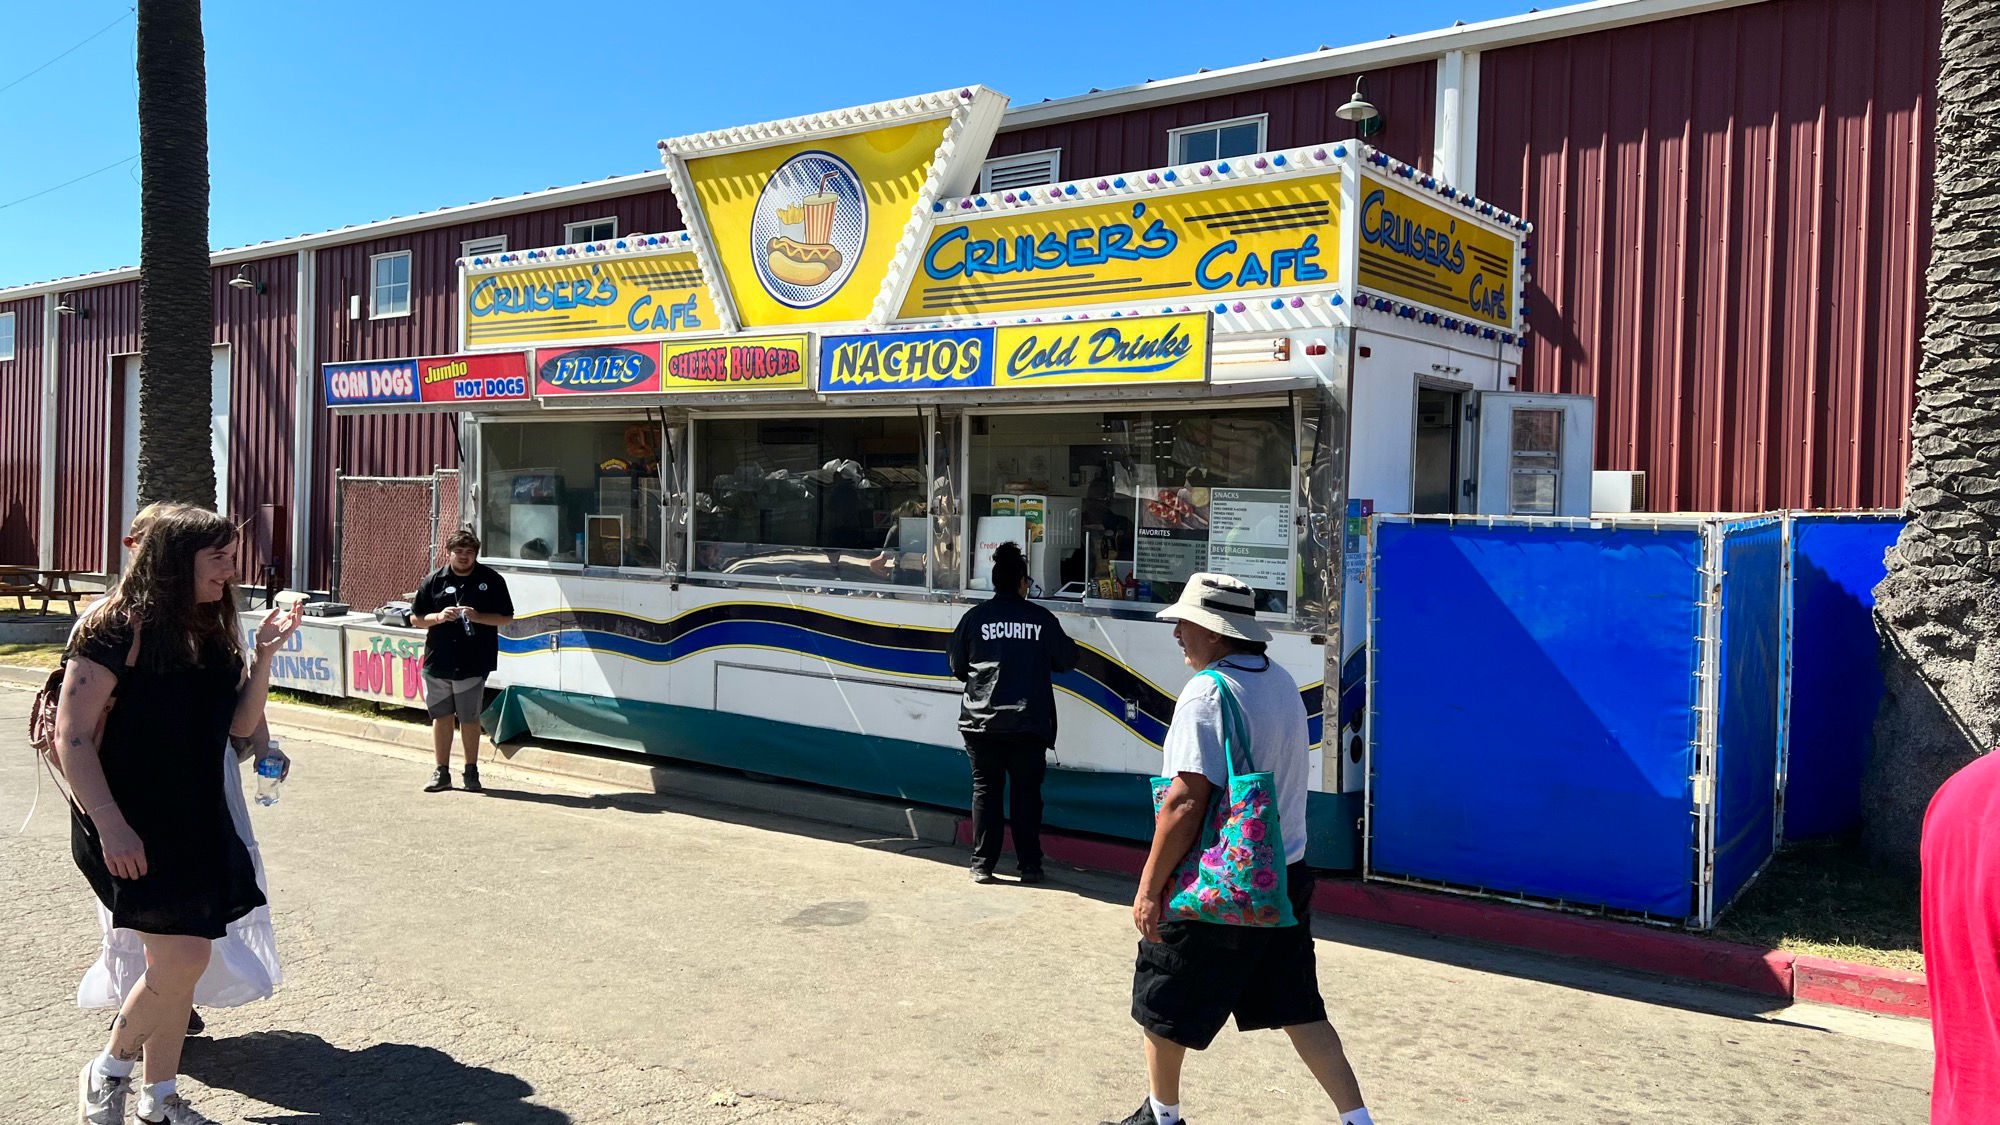 Ventura County Fair Cruiser's Cafe